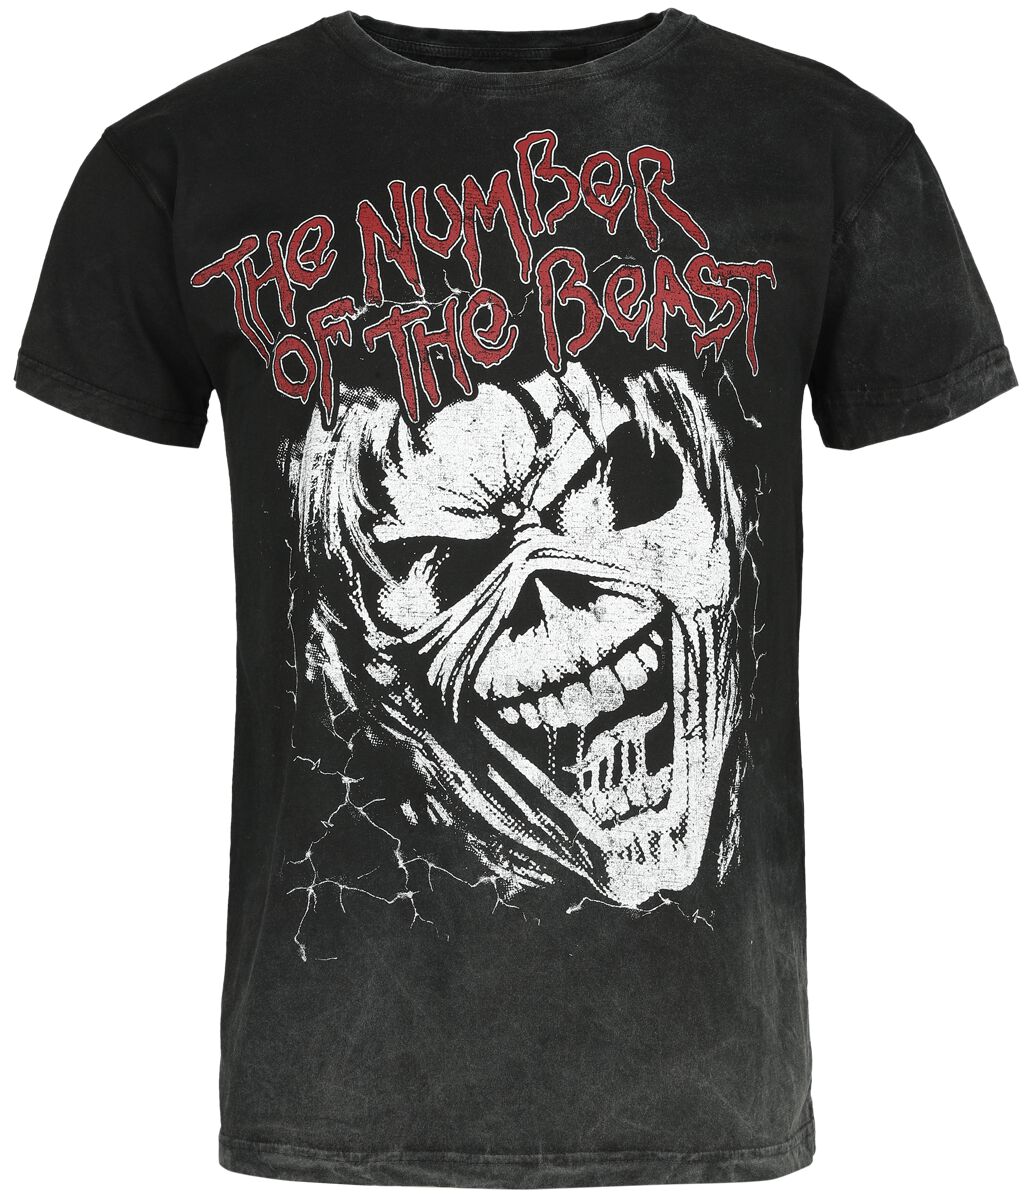 Iron Maiden T-Shirt - The number of the beast - S bis M - für Männer - Größe M - schwarz  - Lizenziertes Merchandise!